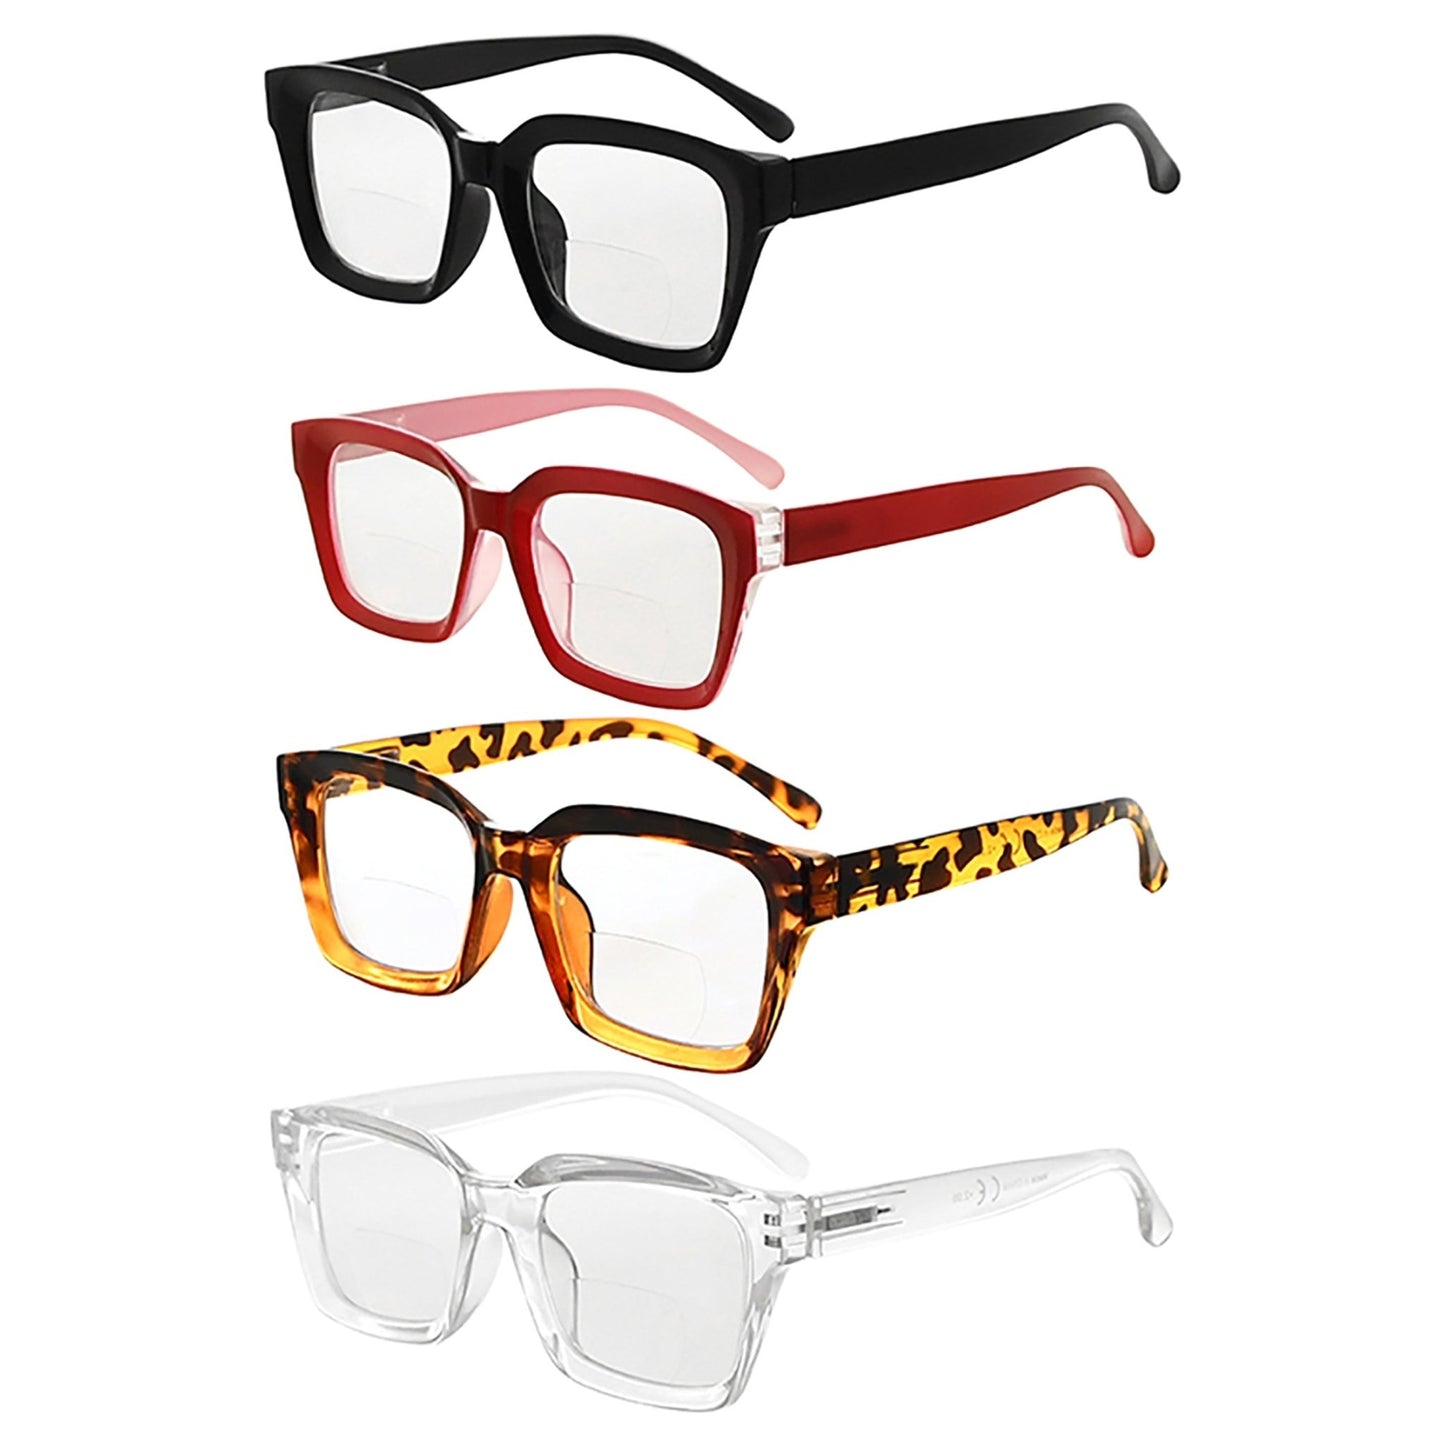 4 Pack Large Frame Square Bifocal Reading Glasses BR9106